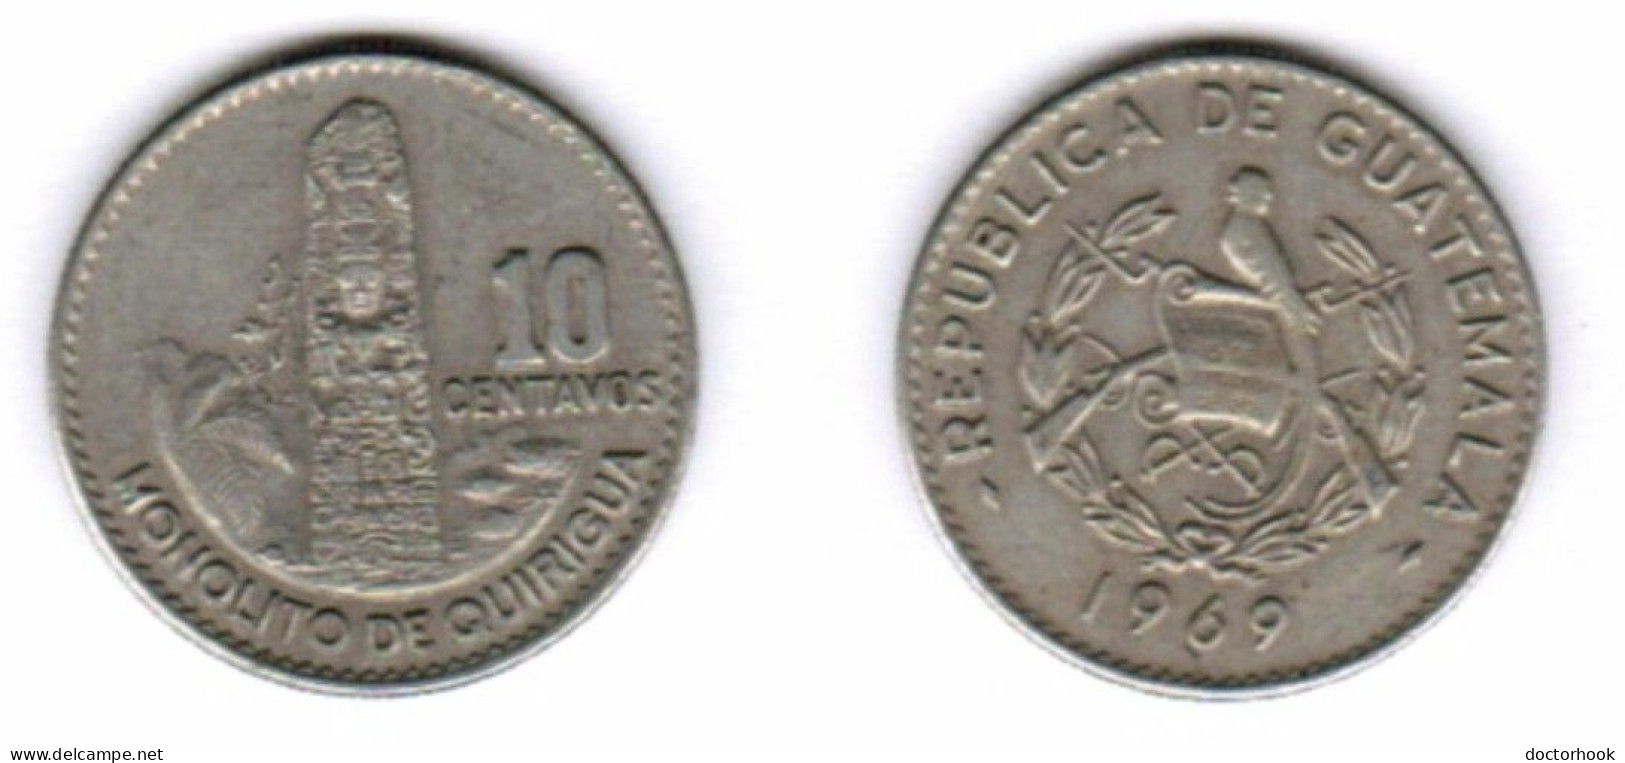 GUATEMALA   10 CENTAVOS 1969 (KM # 267) #7242 - Guatemala